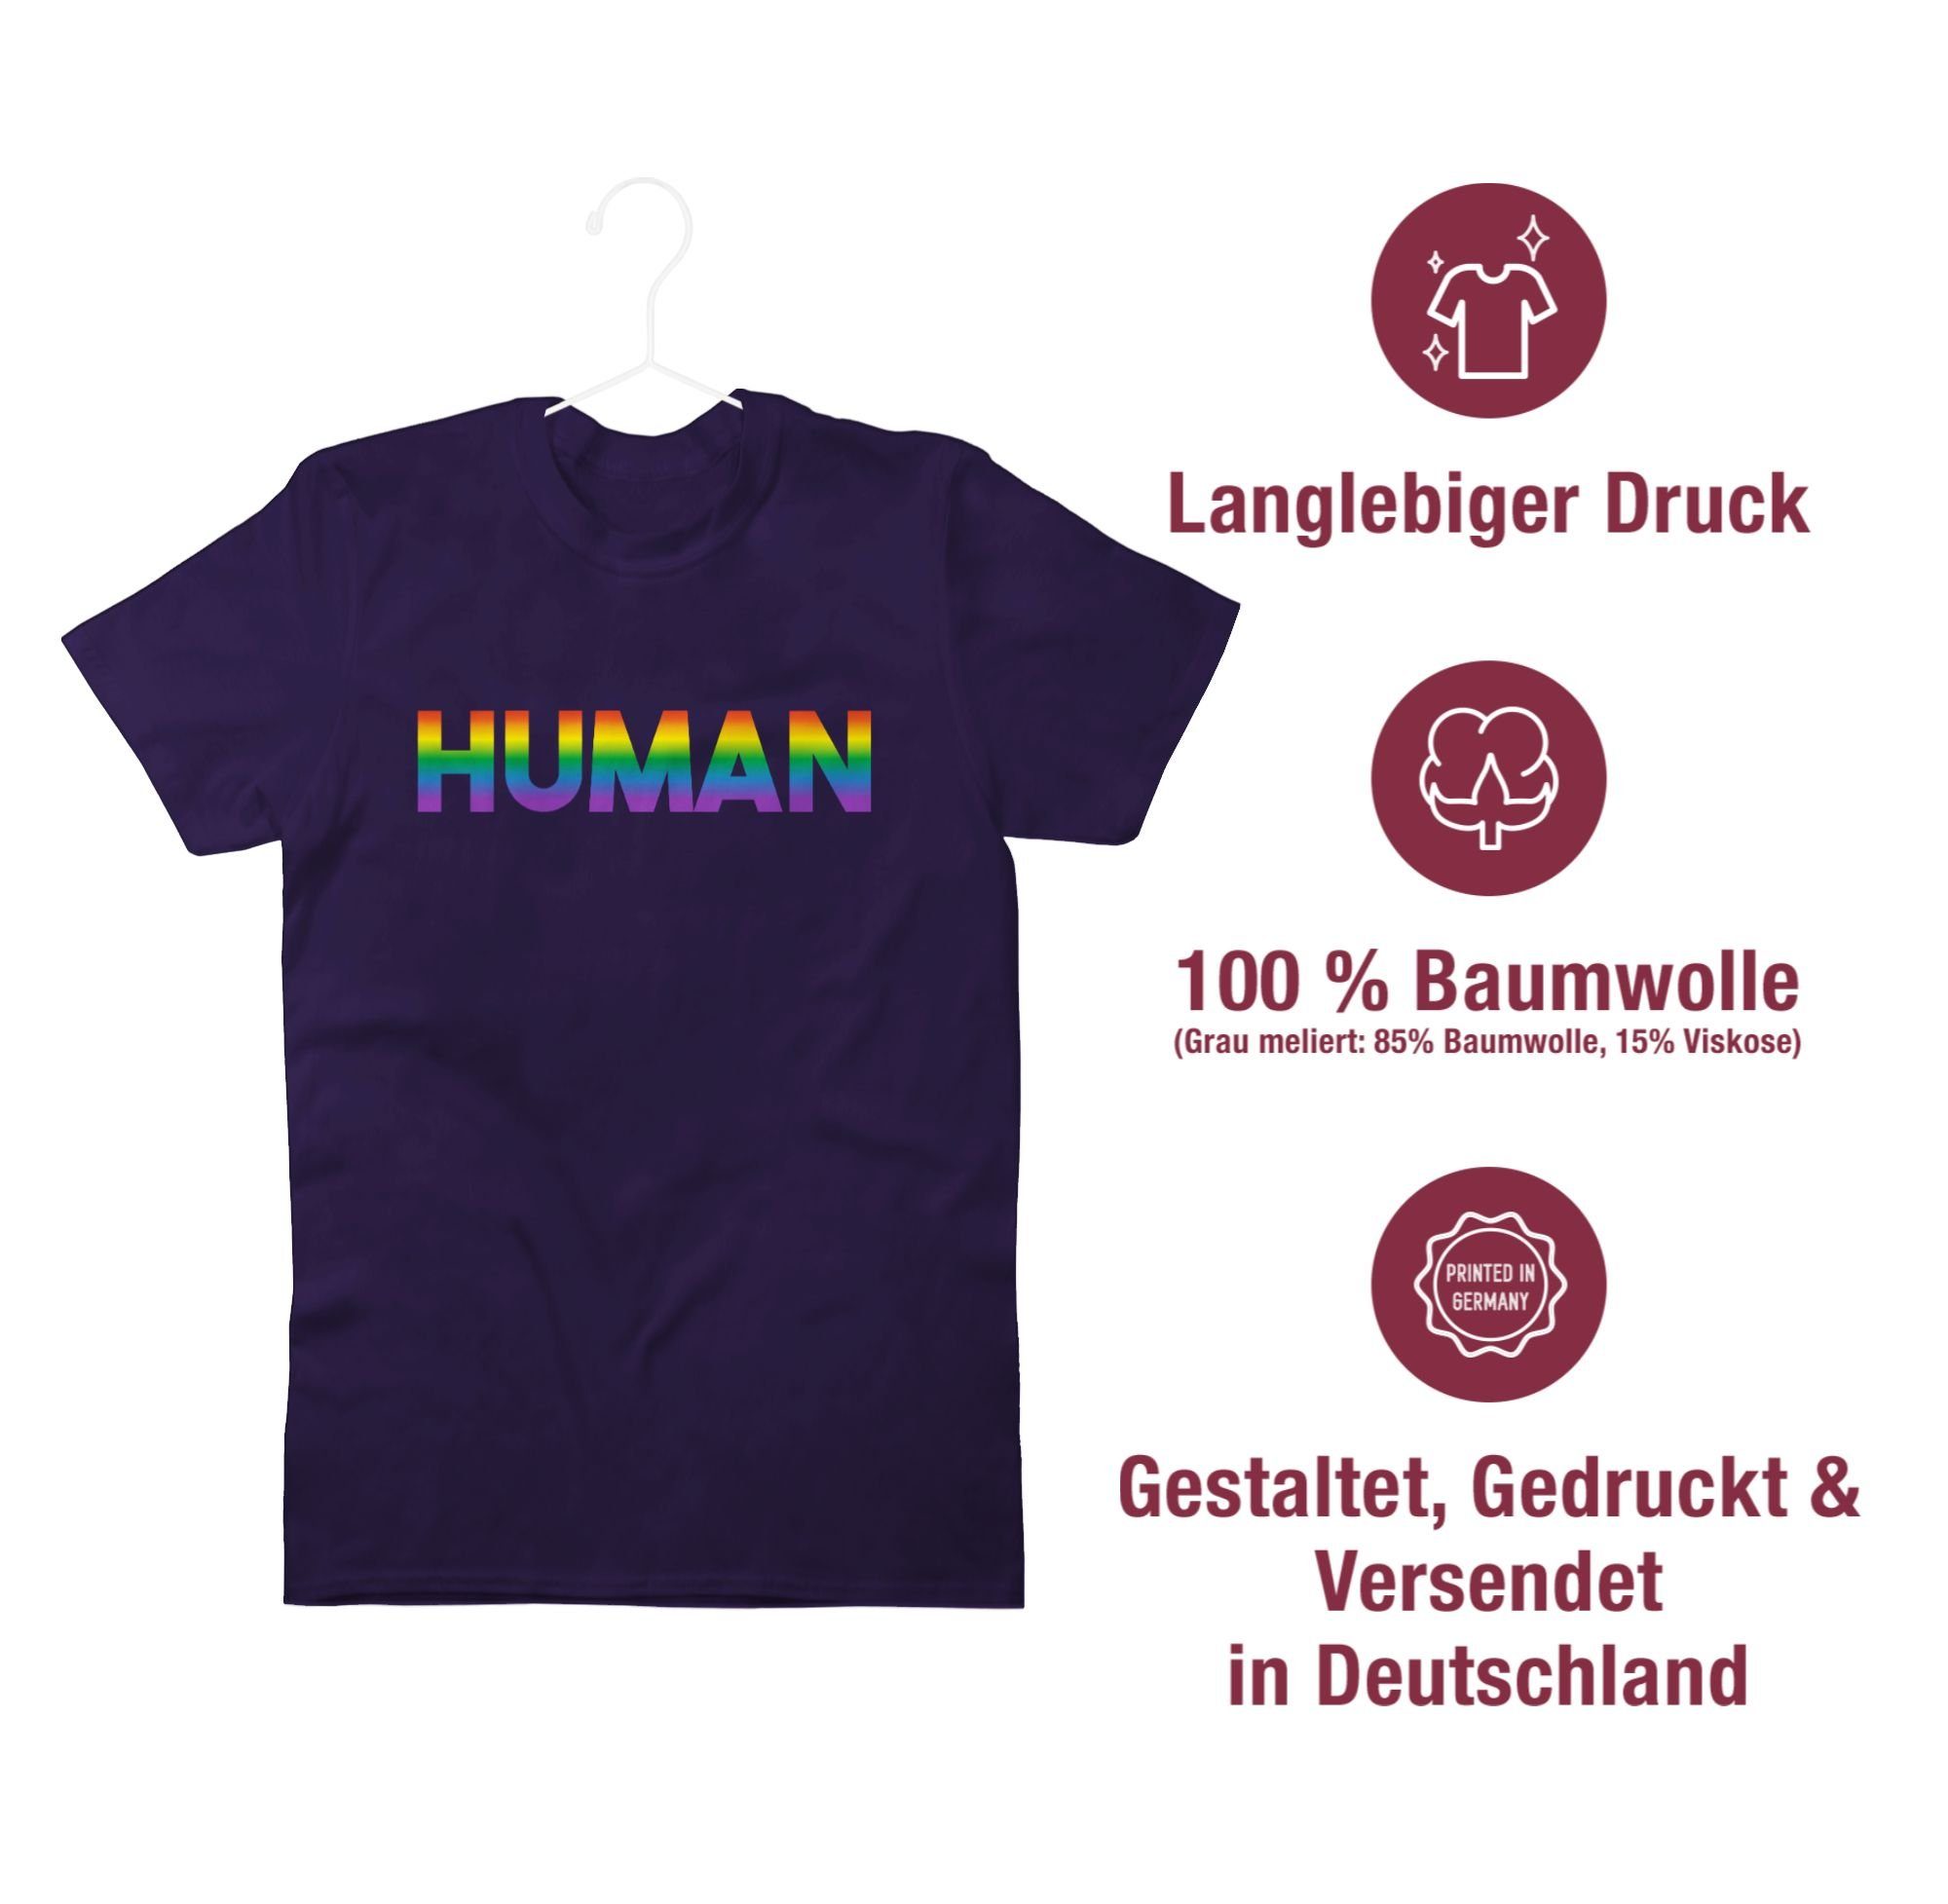 Shirtracer T-Shirt Human - Regenbogen Kleidung Schriftzug 03 LGBT Lila 